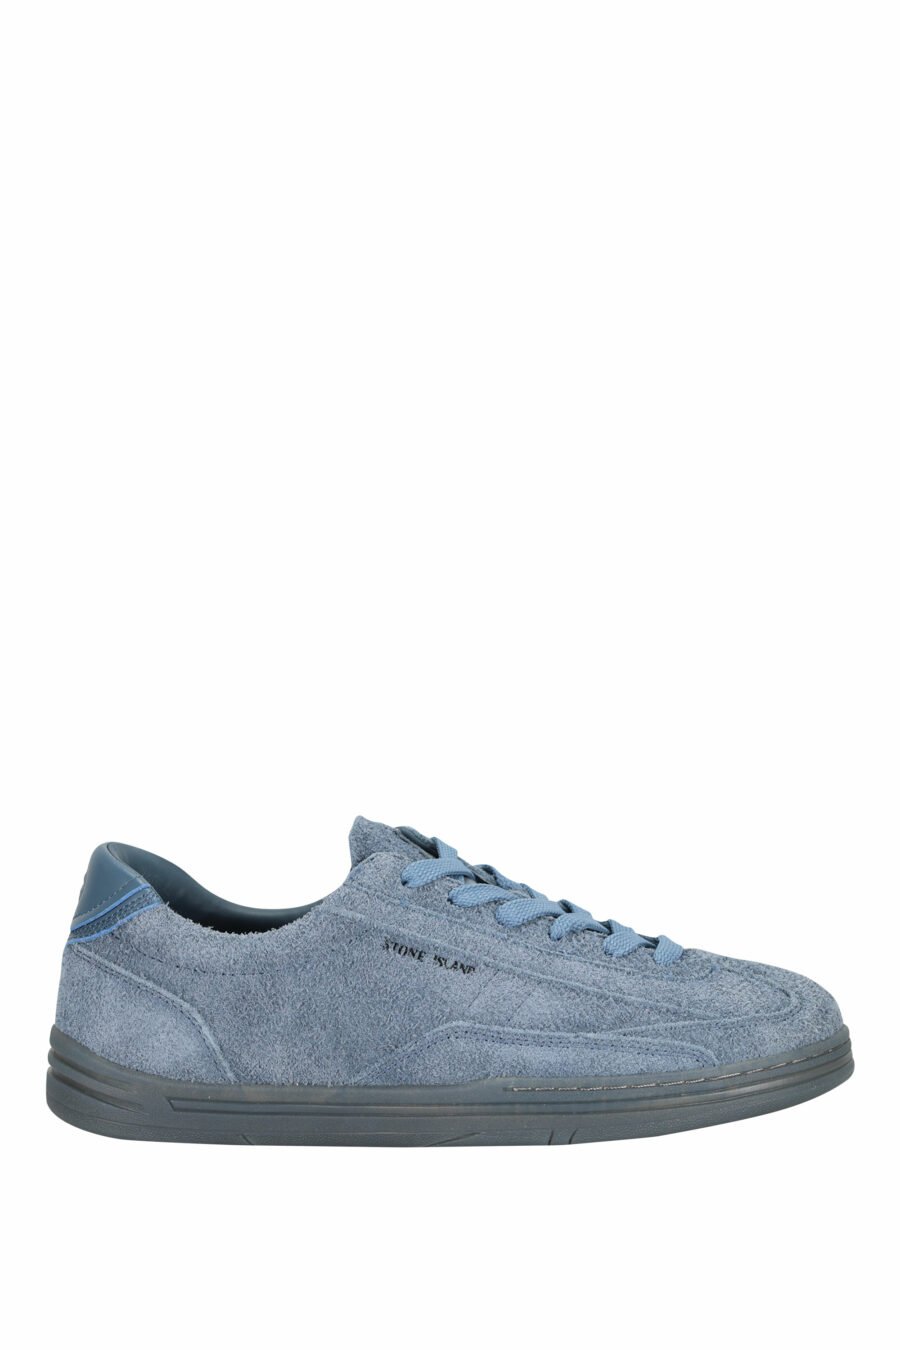 Zapatillas azul oscuro con minilogo y suela gris - 8052572937866